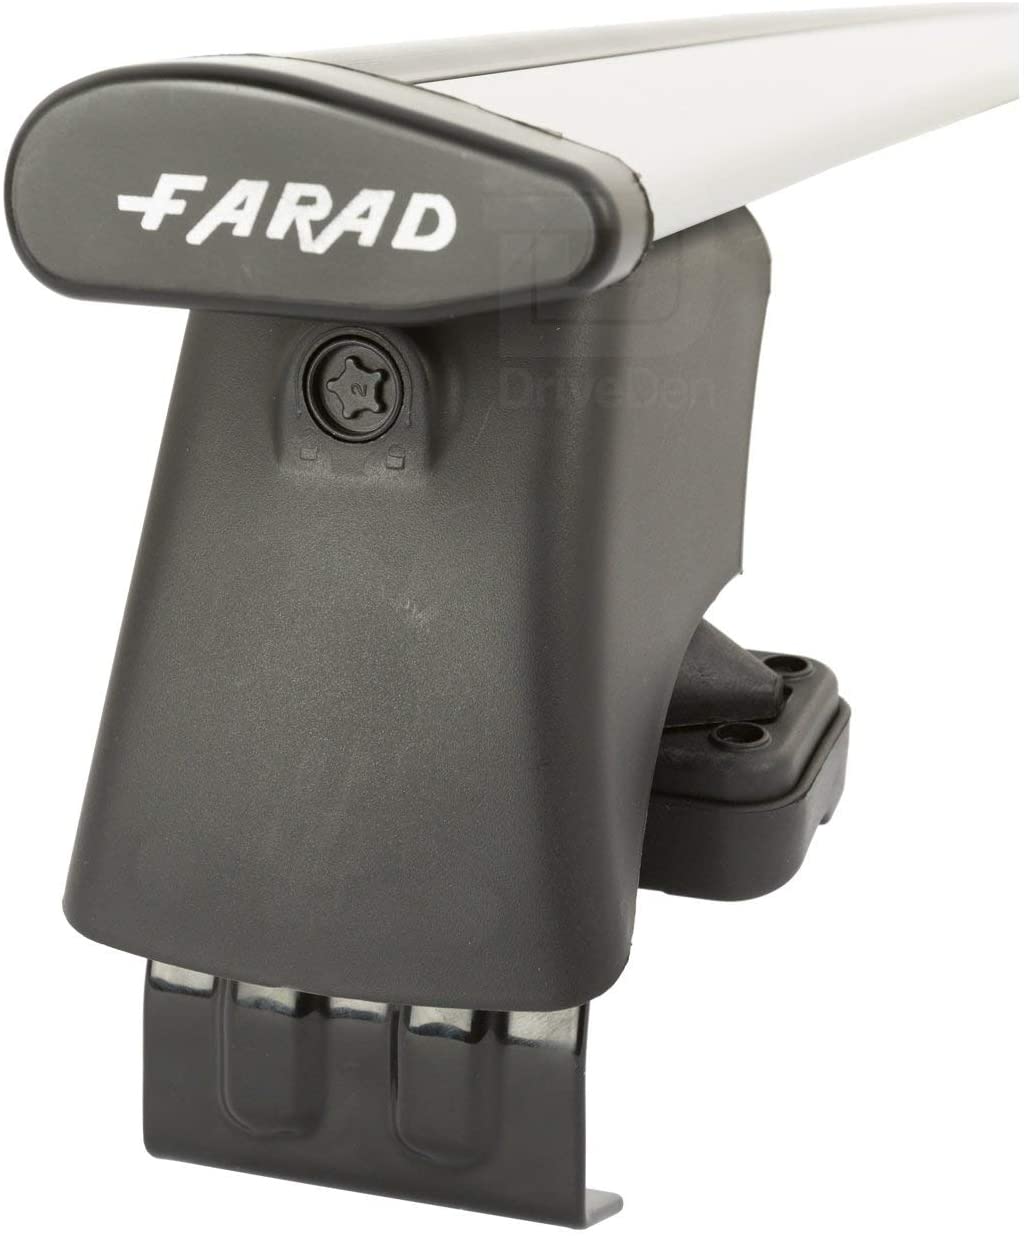 FARAD-Kit H2 per barre portatutto - Nissan Juke 2020> (senza corrimano)